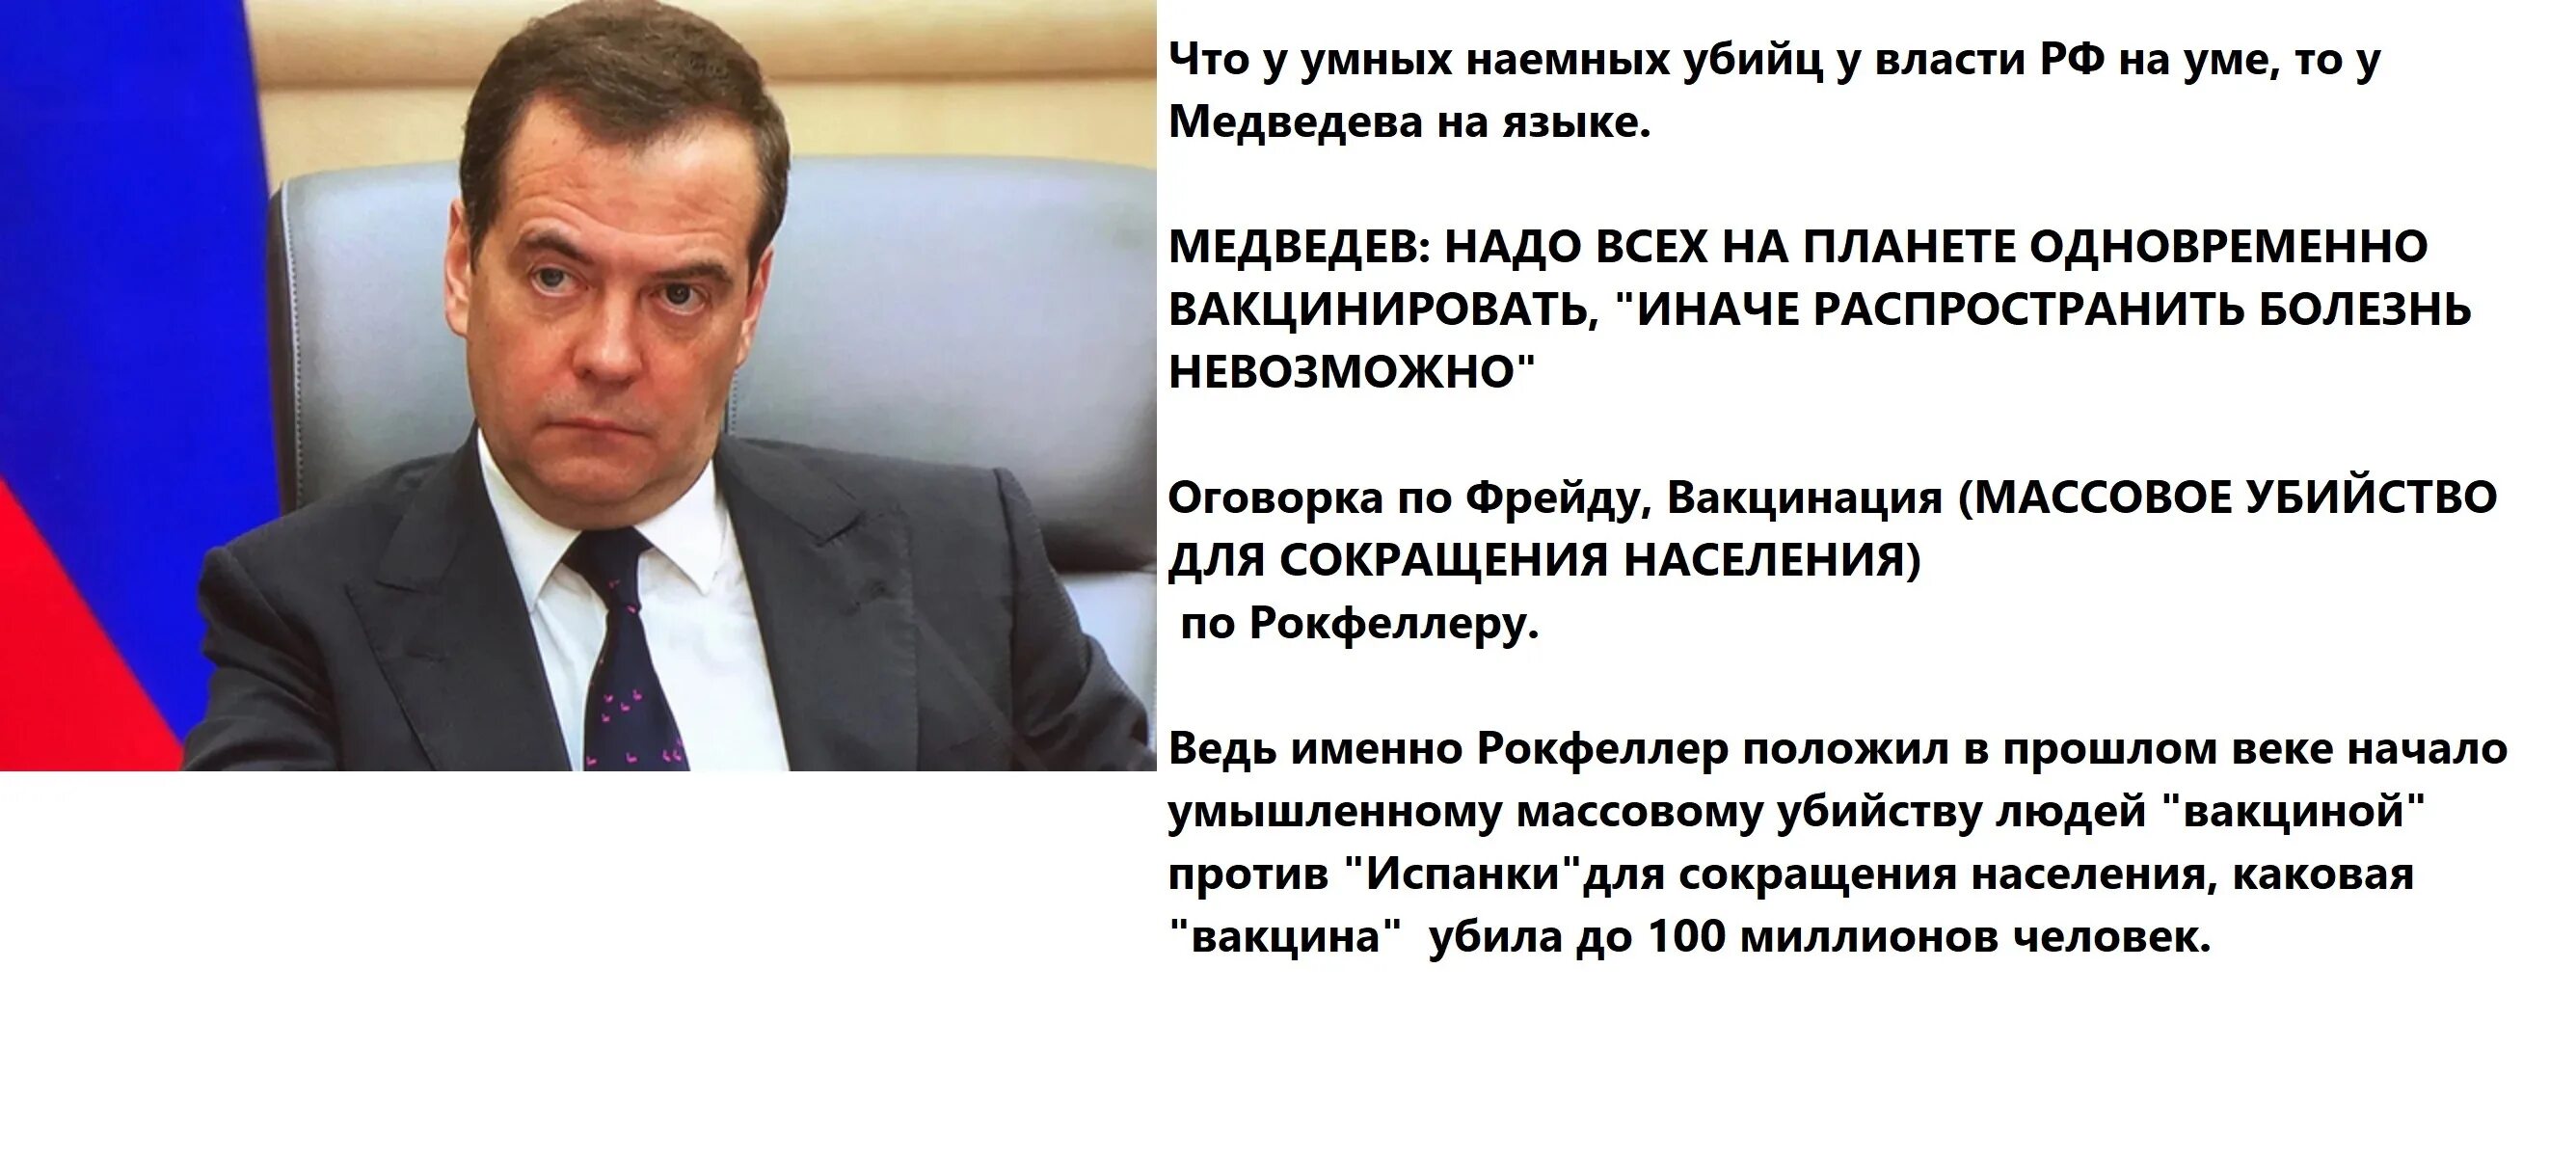 Высказывания д Медведева. Медведев мы не сможем распространить болезнь. Цитаты Медведева смешные. Речь Медведева. Оговорка по бывшей